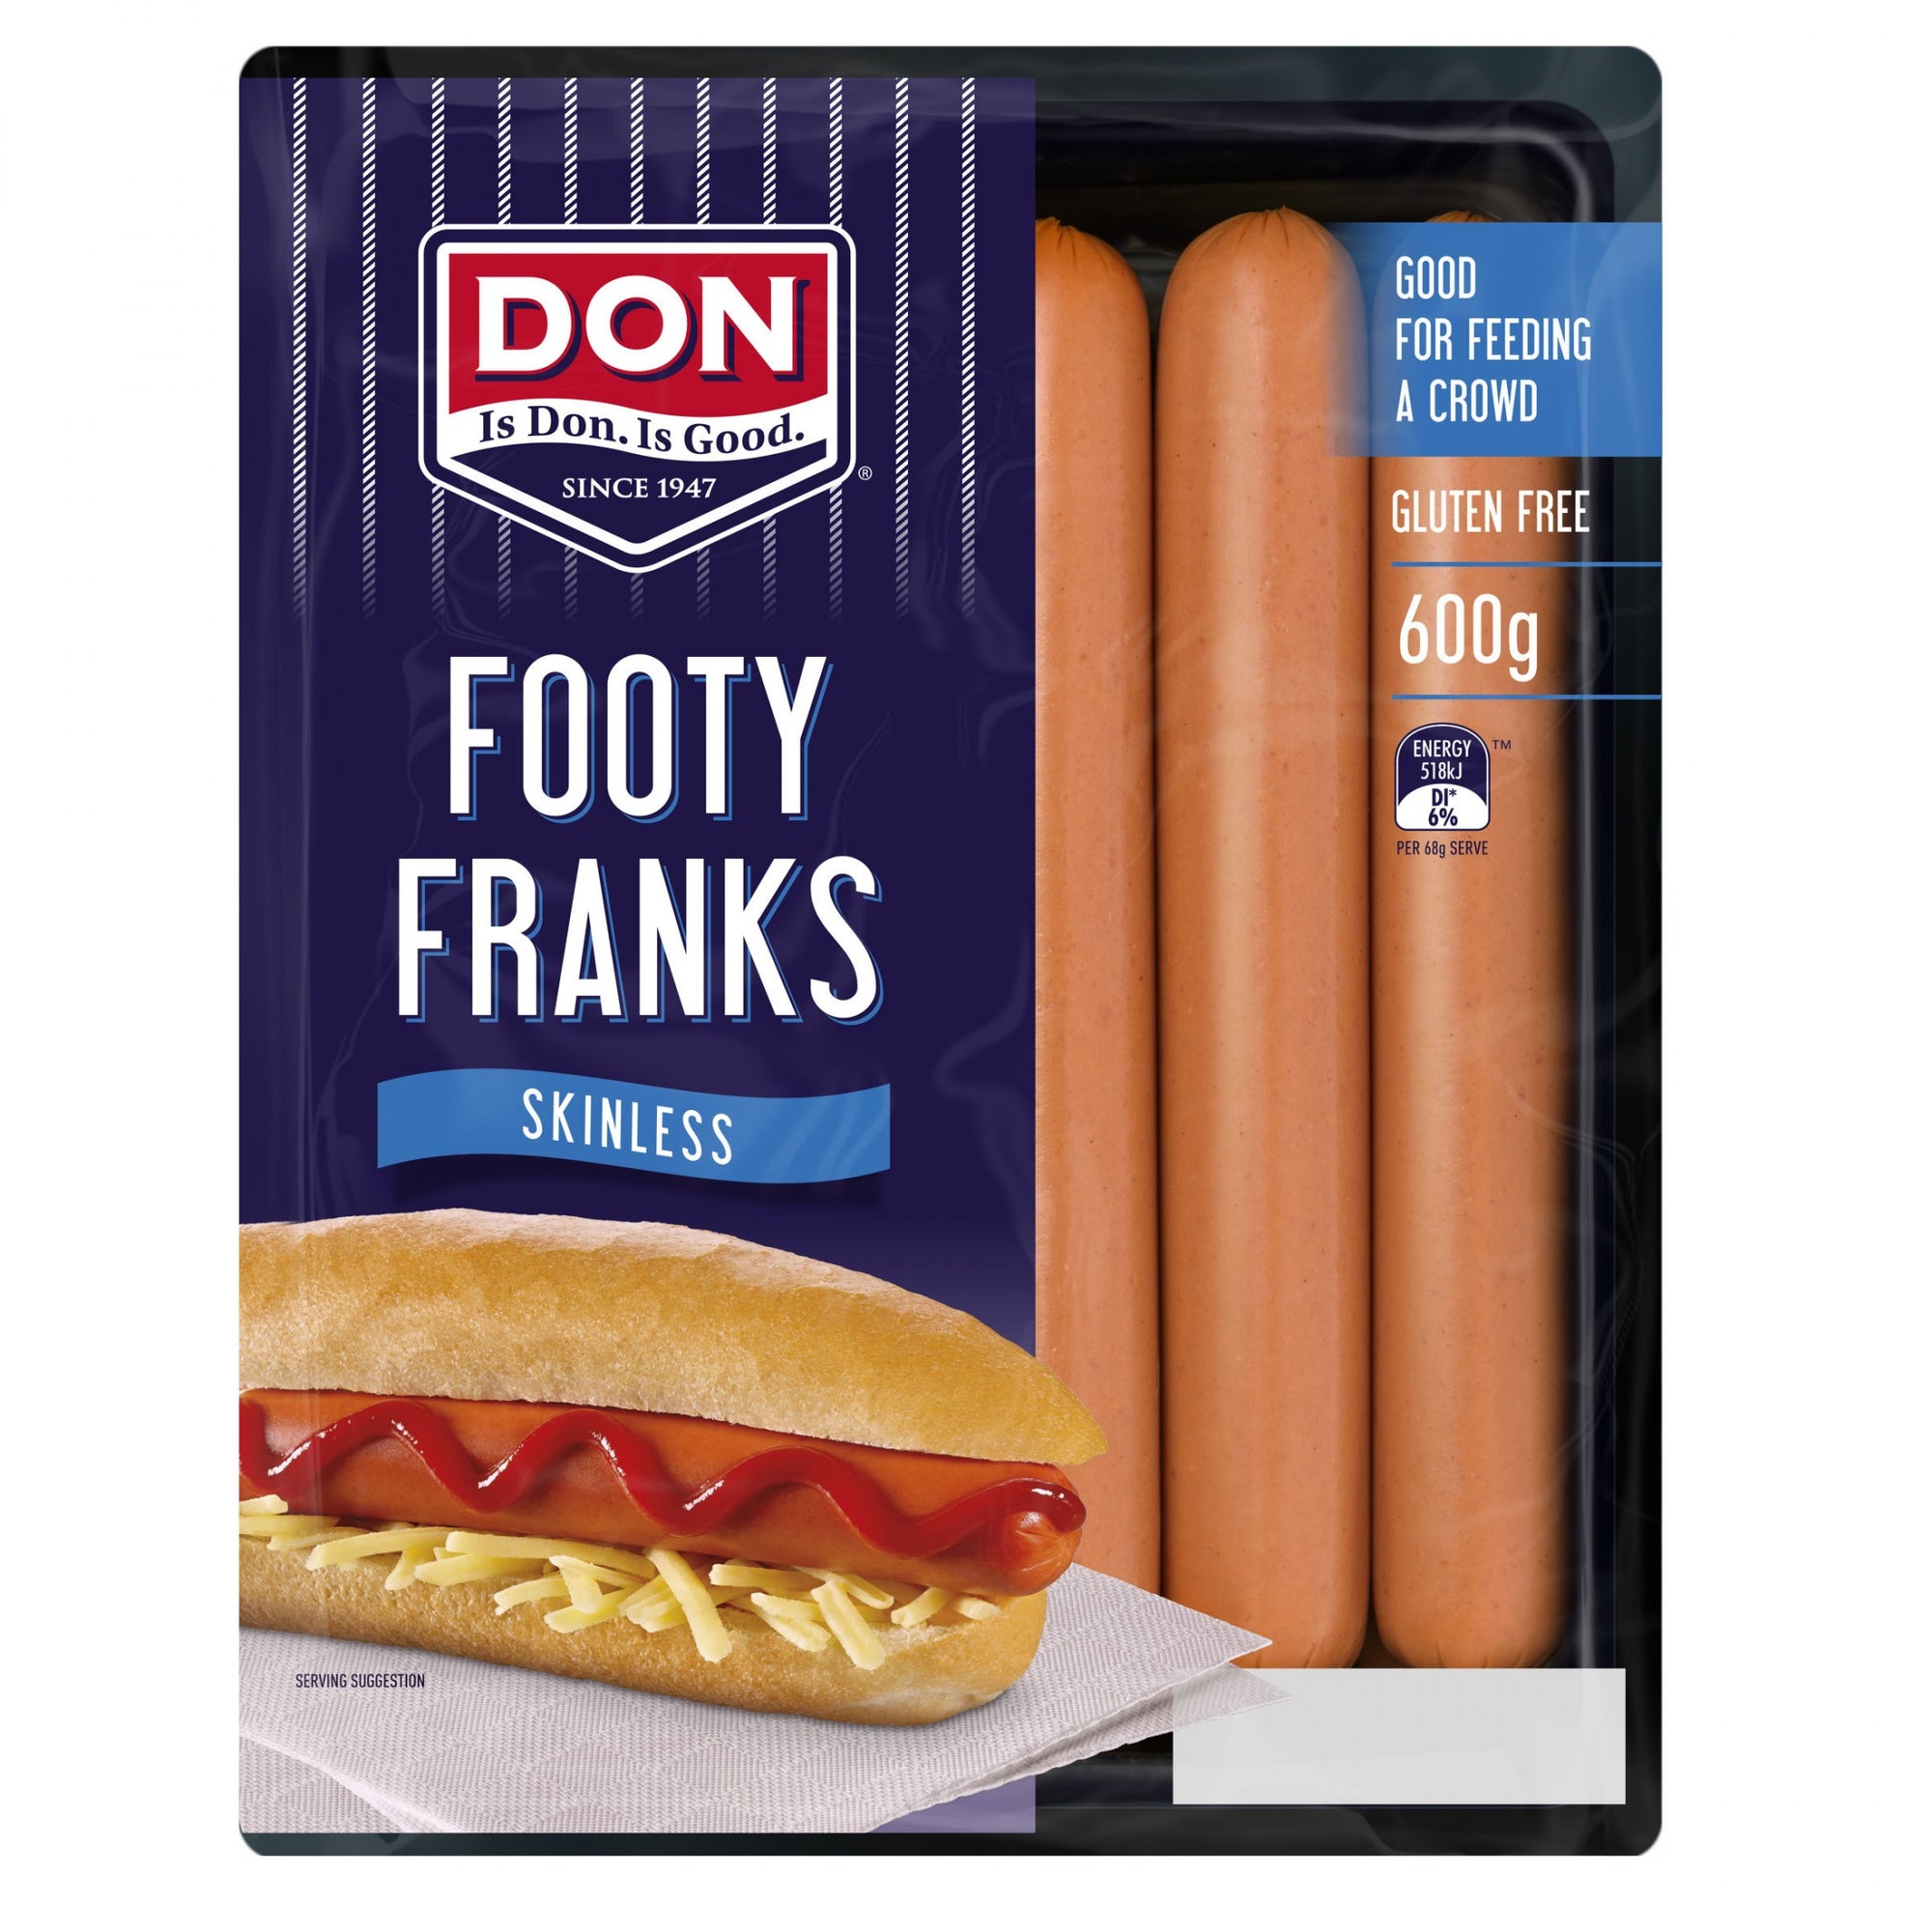 Don Footy Franks Skinless 600g